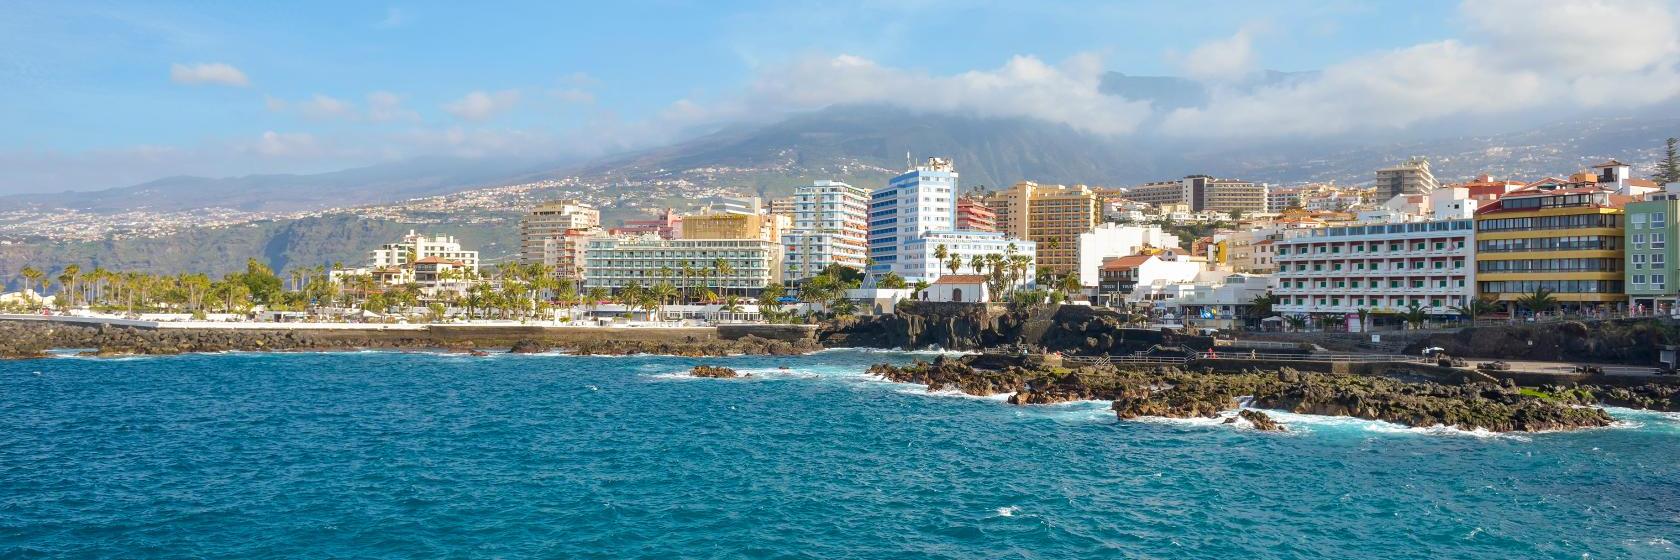 10 Best Puerto de la Cruz Hotels, Spain (From $43)